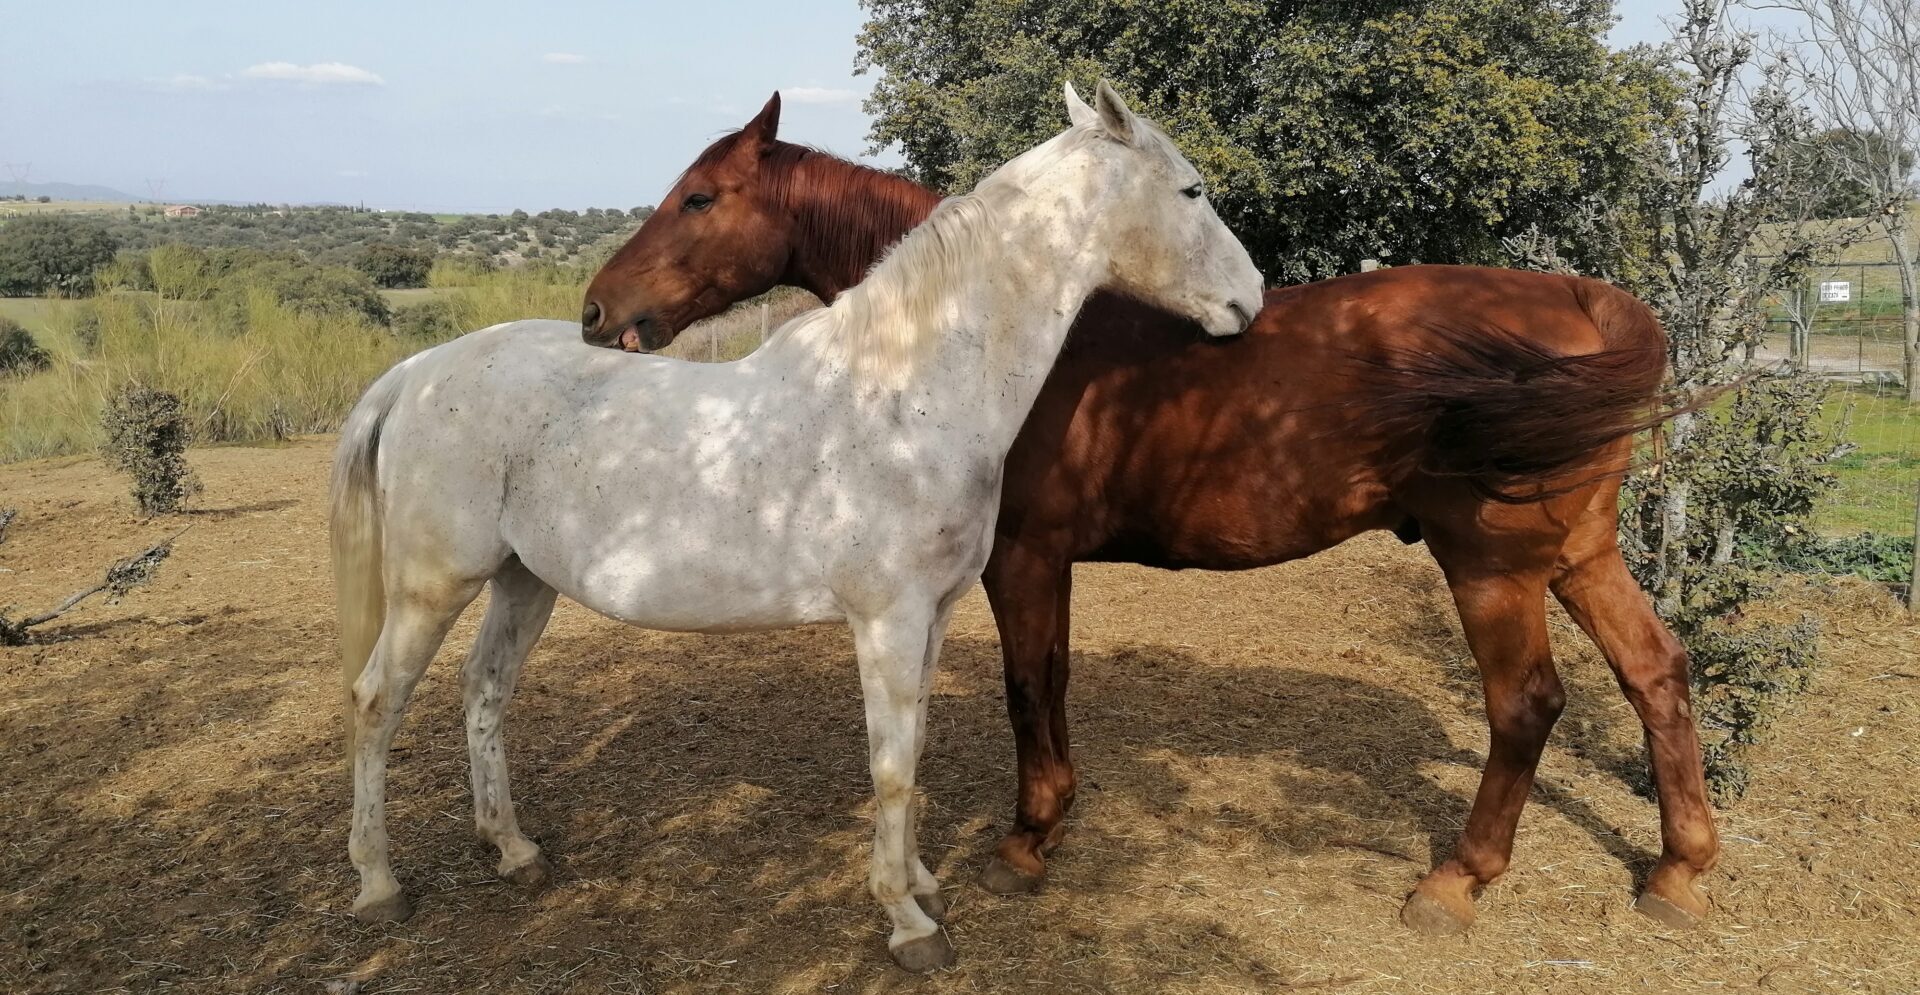 Fotografía de dos de los caballos interactuando en su prado